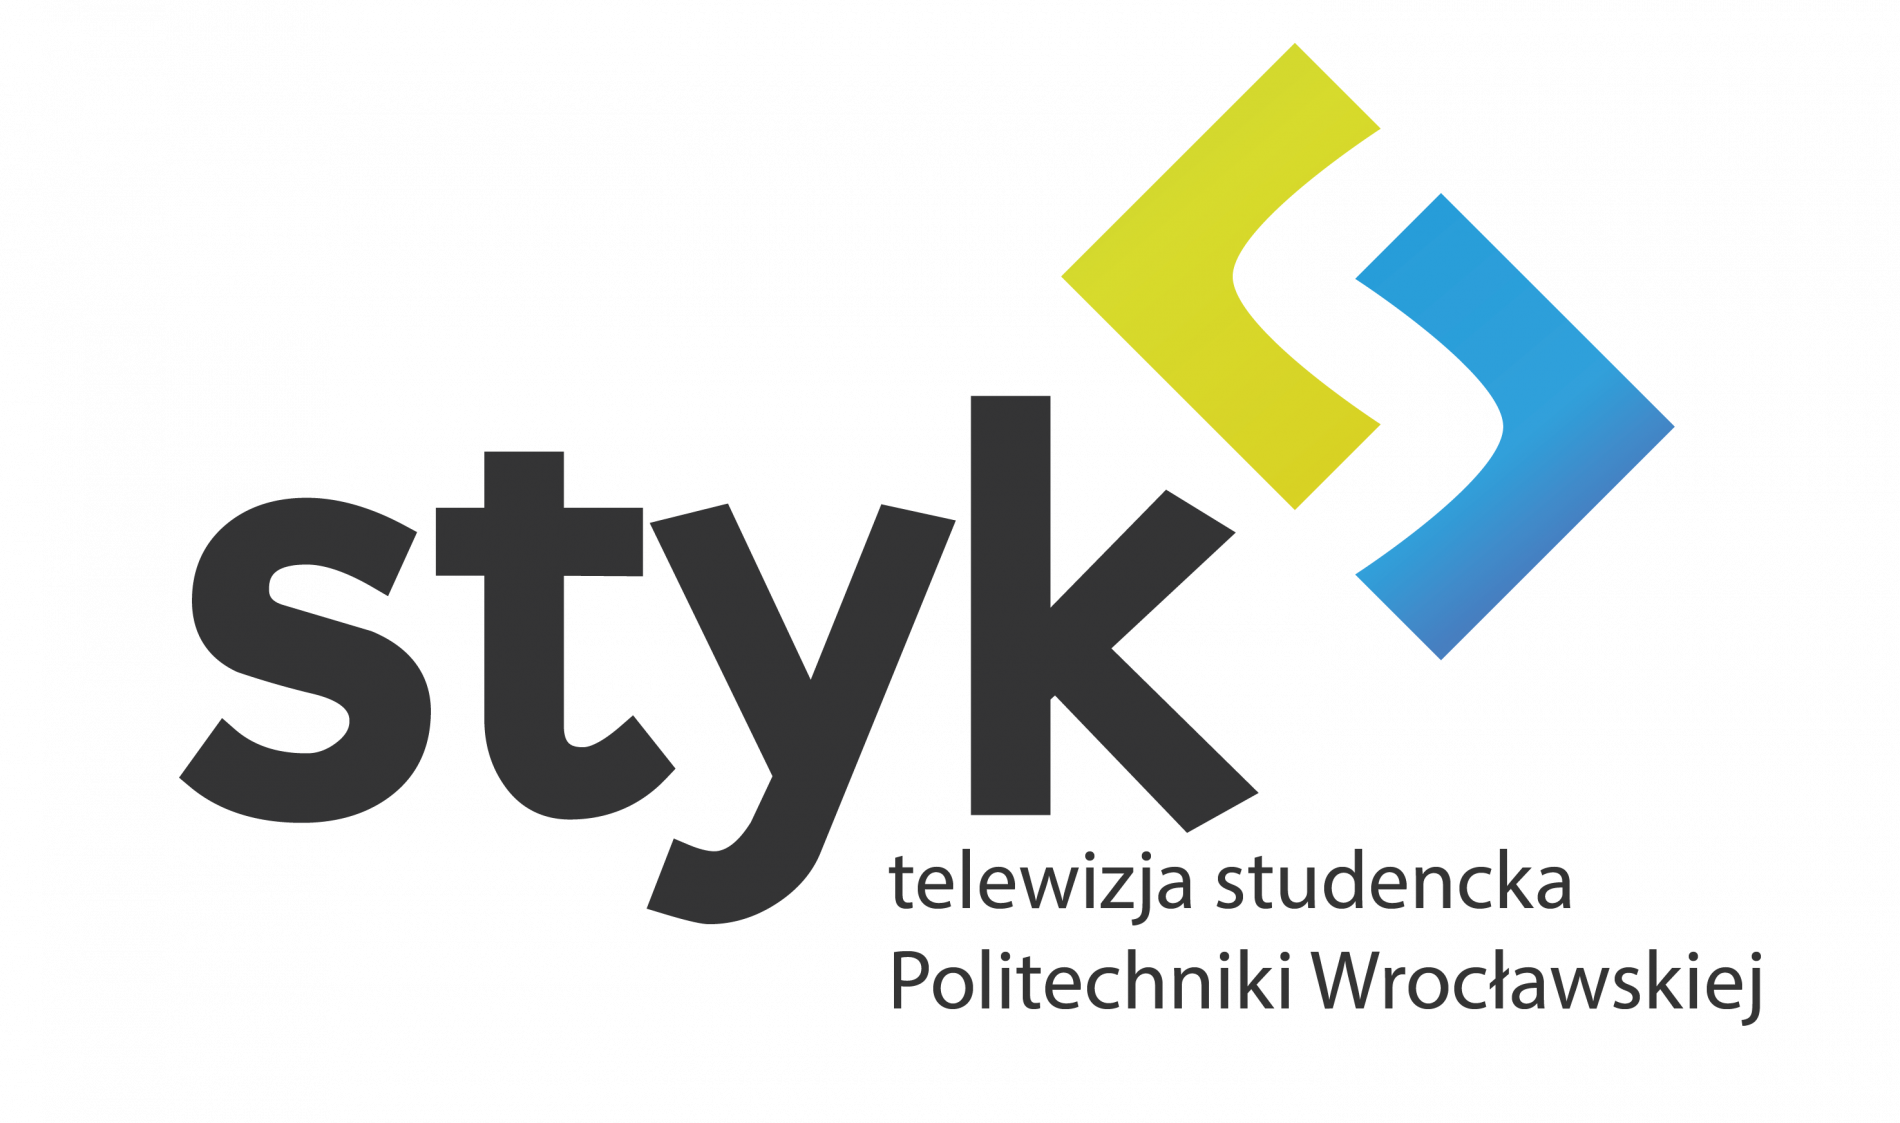 styk_logo.png